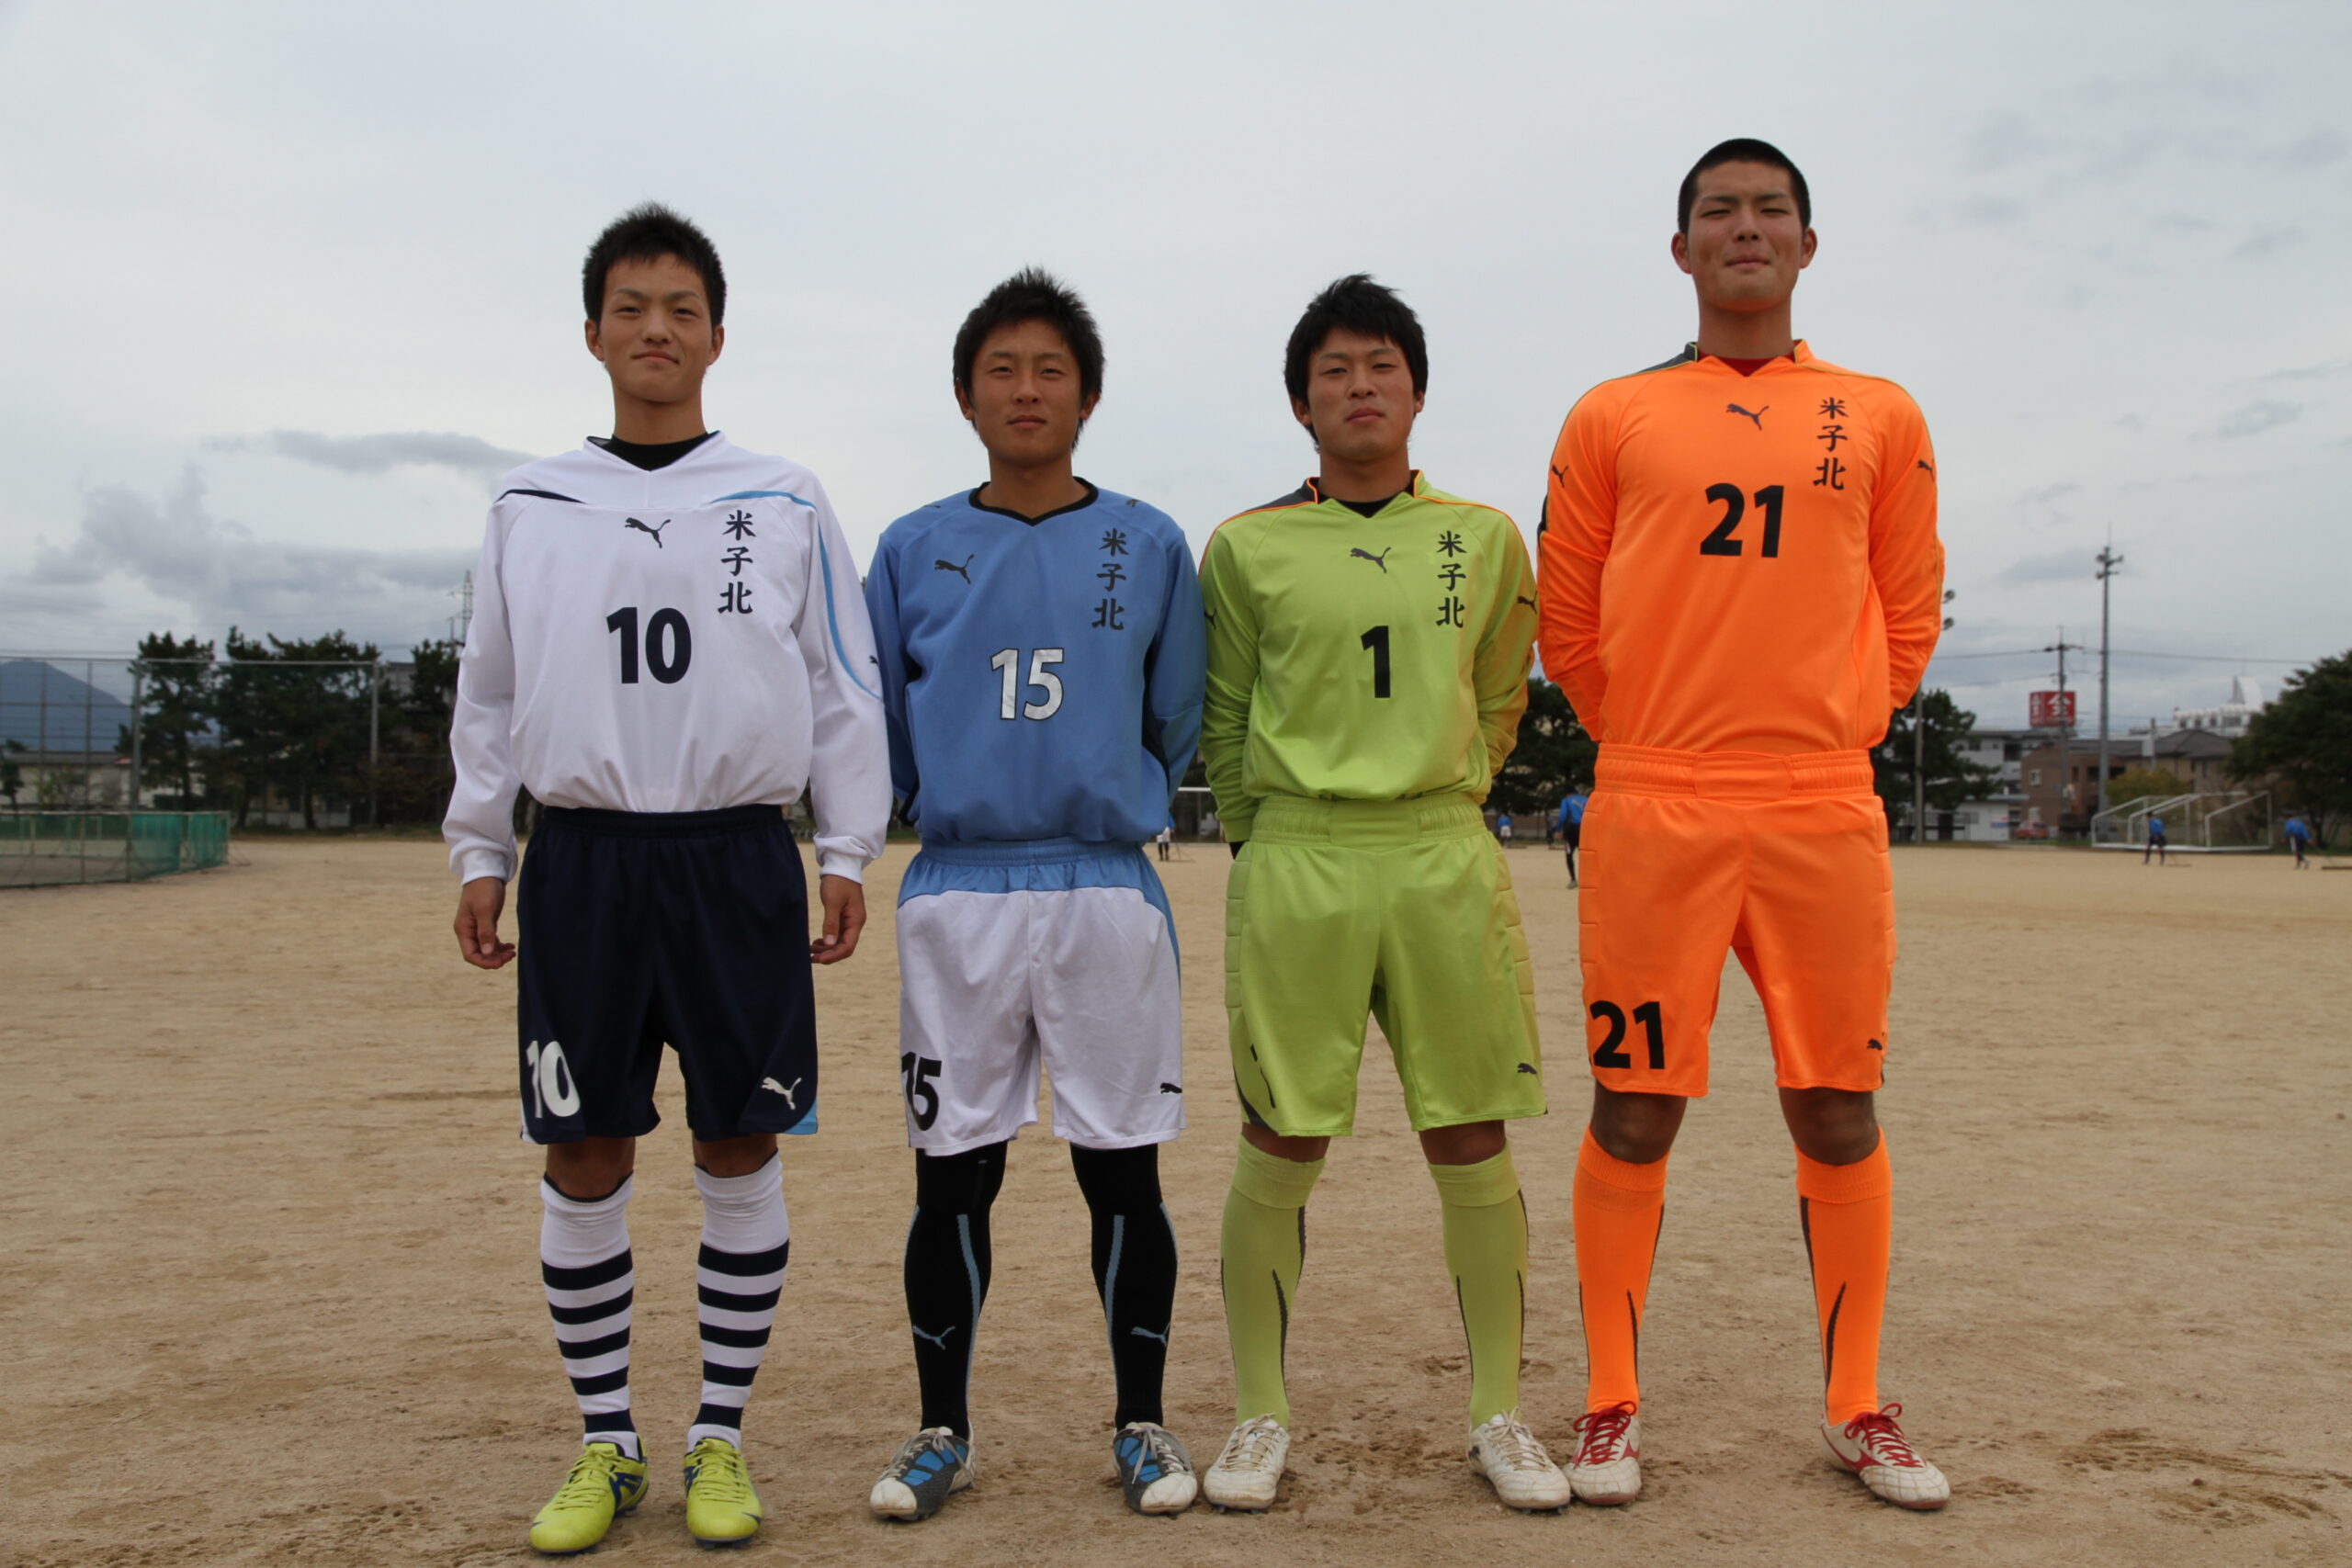 最新商品 米子北高校サッカー部公式ユニフォーム - サッカー/フットサル